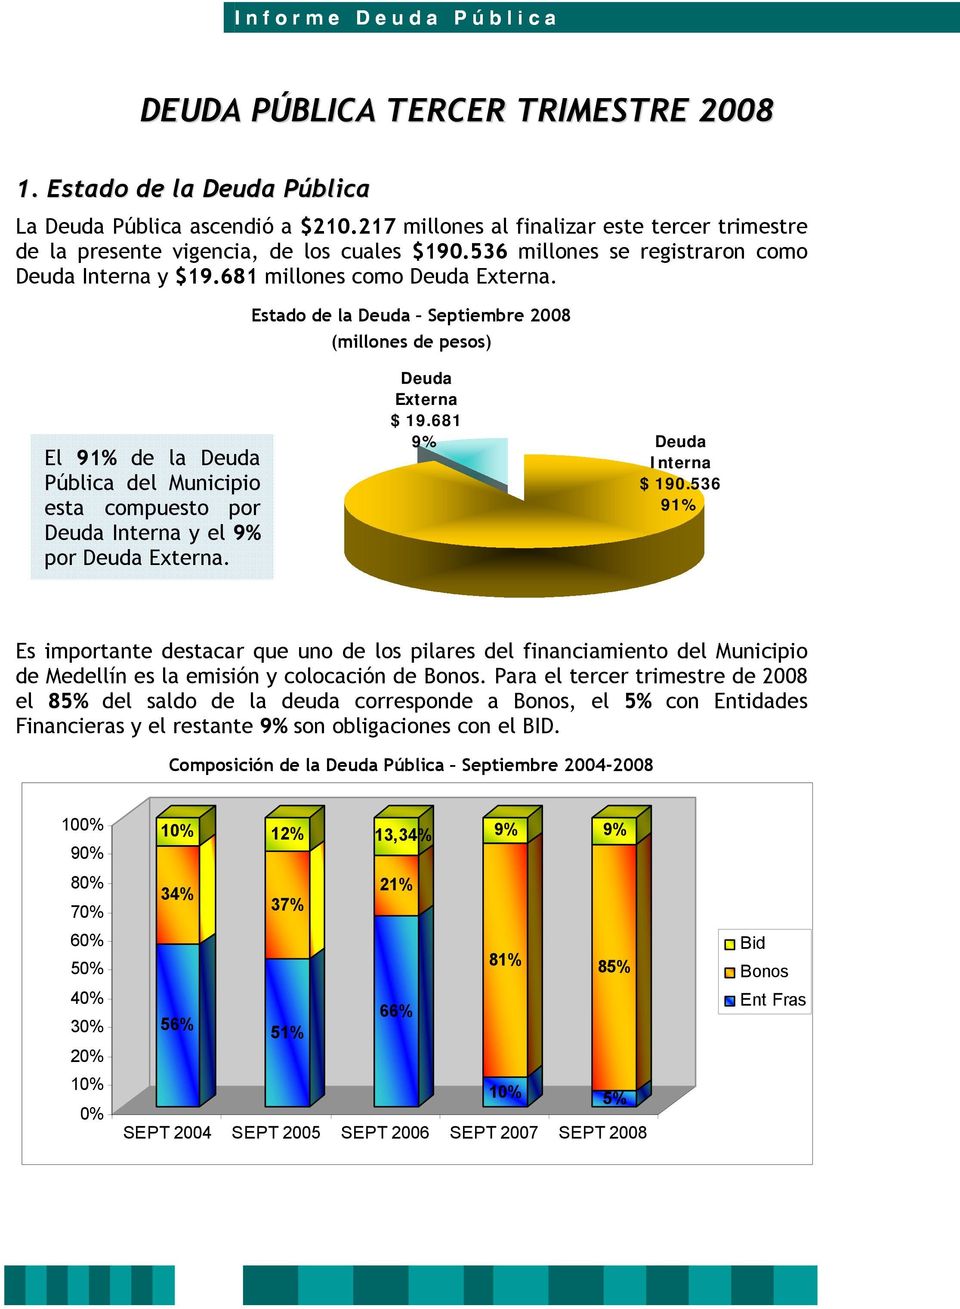 Estado de la Deuda Septiembre 20 (millones de pesos) El 91% de la Deuda Pública del Municipio esta compuesto por Deuda Interna y el 9% por Deuda Externa. Deuda Externa $ 19.681 9% Deuda Interna $ 190.